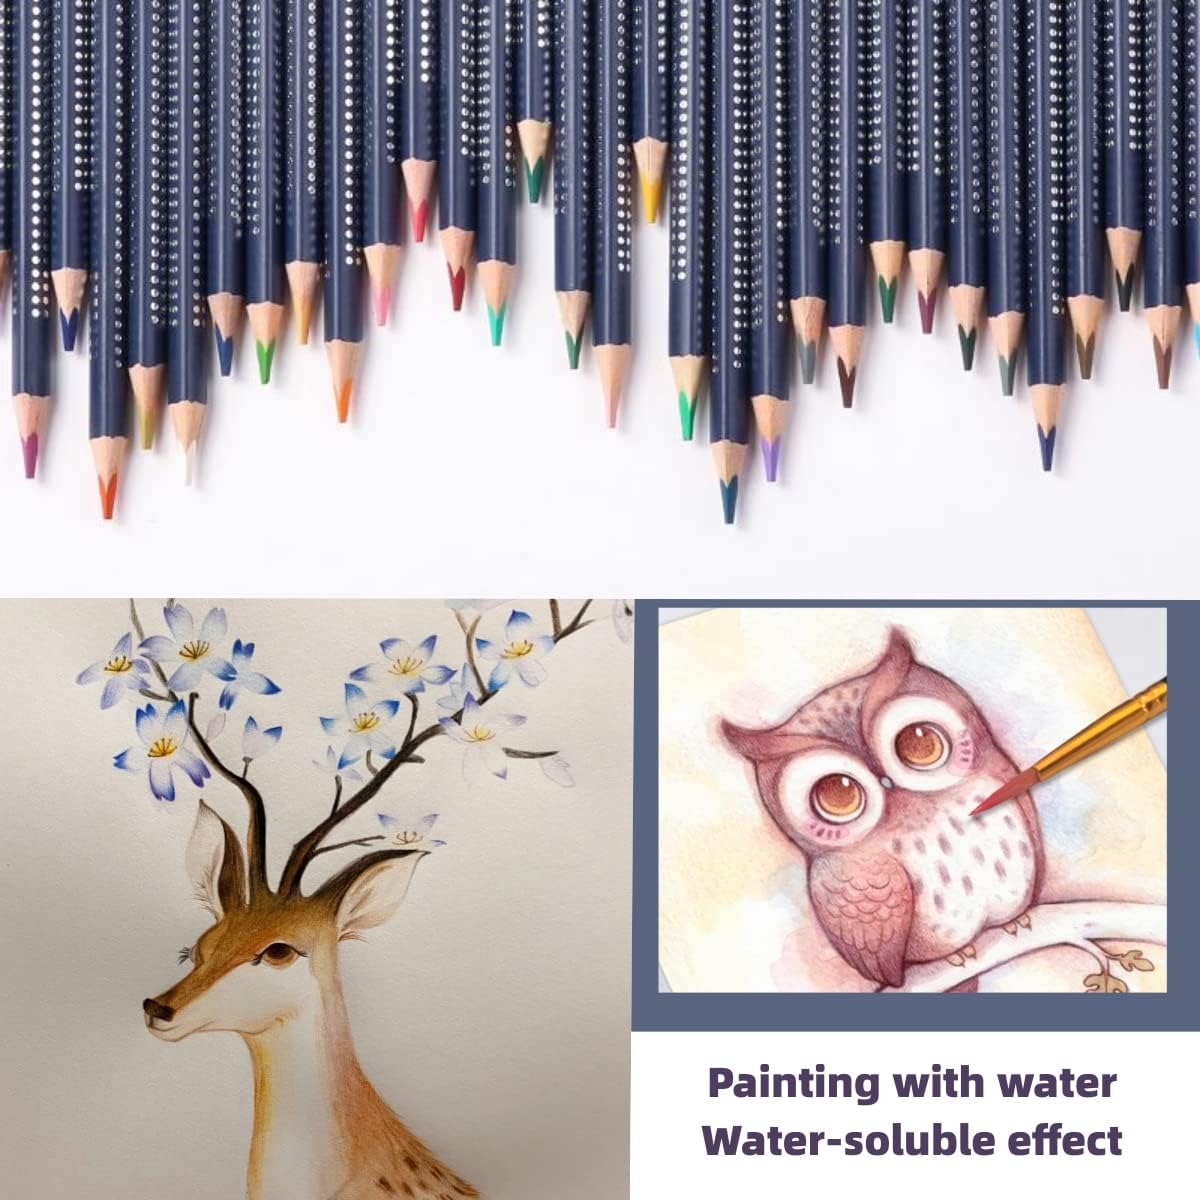 GIORGIONE Watercolor Pencils 120 ARTIST AQUARELLE Colored Pencils